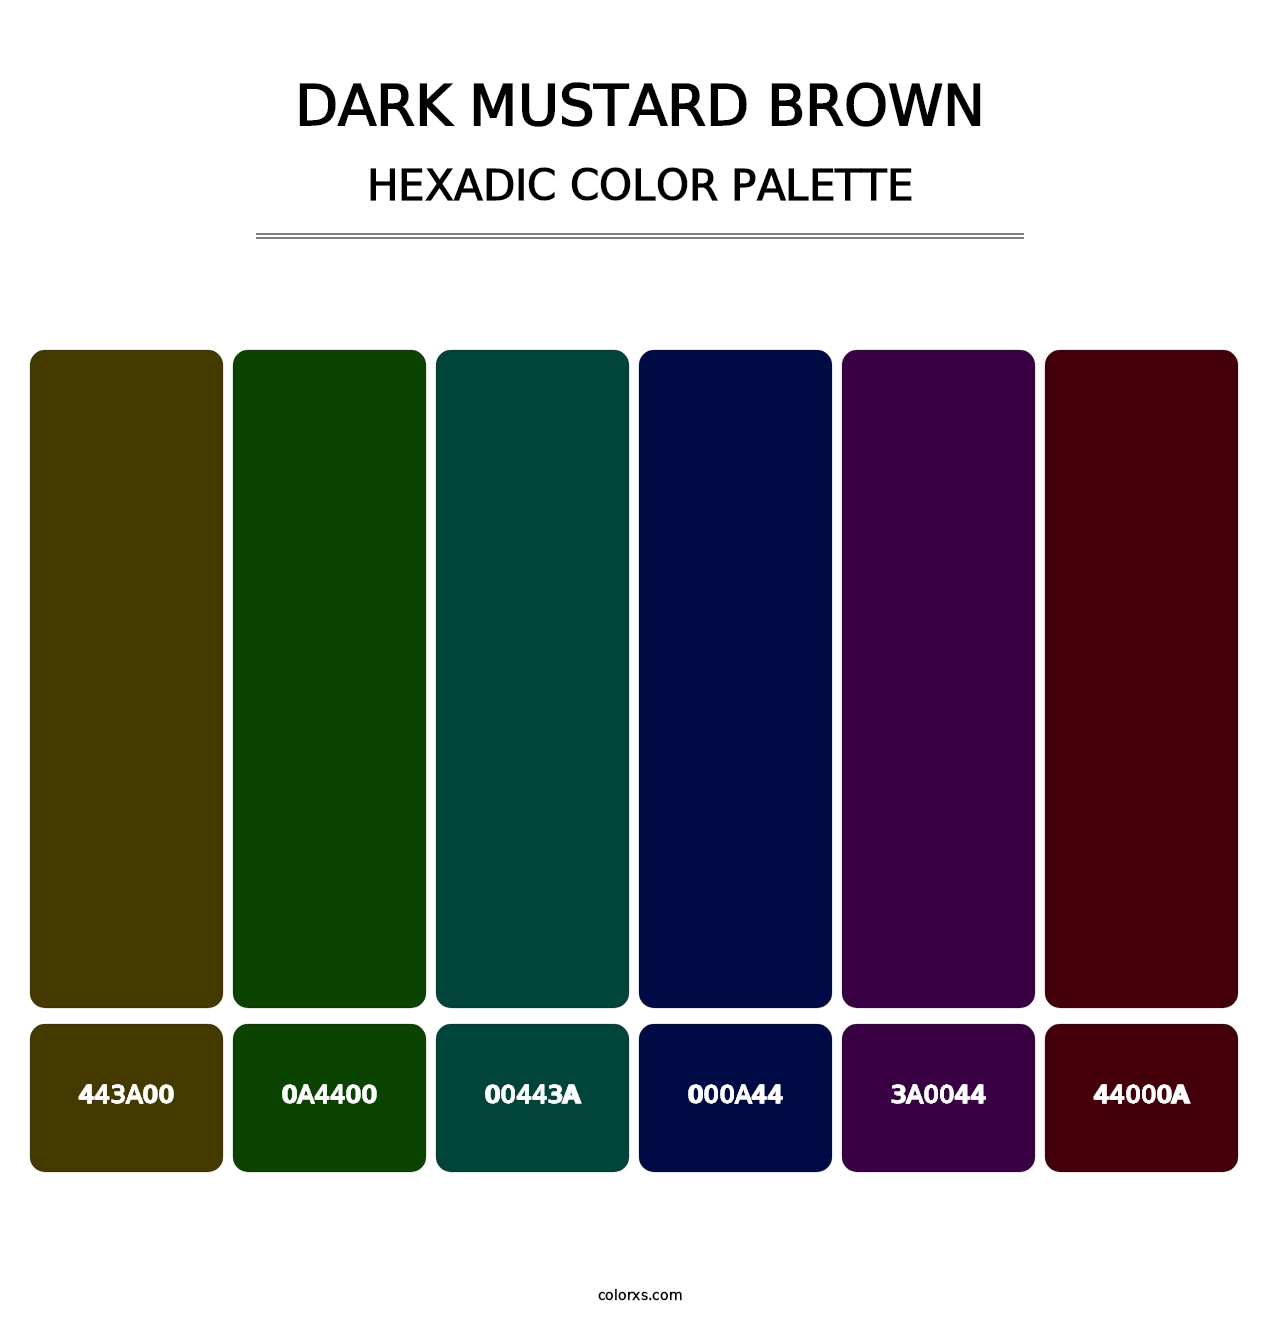 Dark Mustard Brown - Hexadic Color Palette